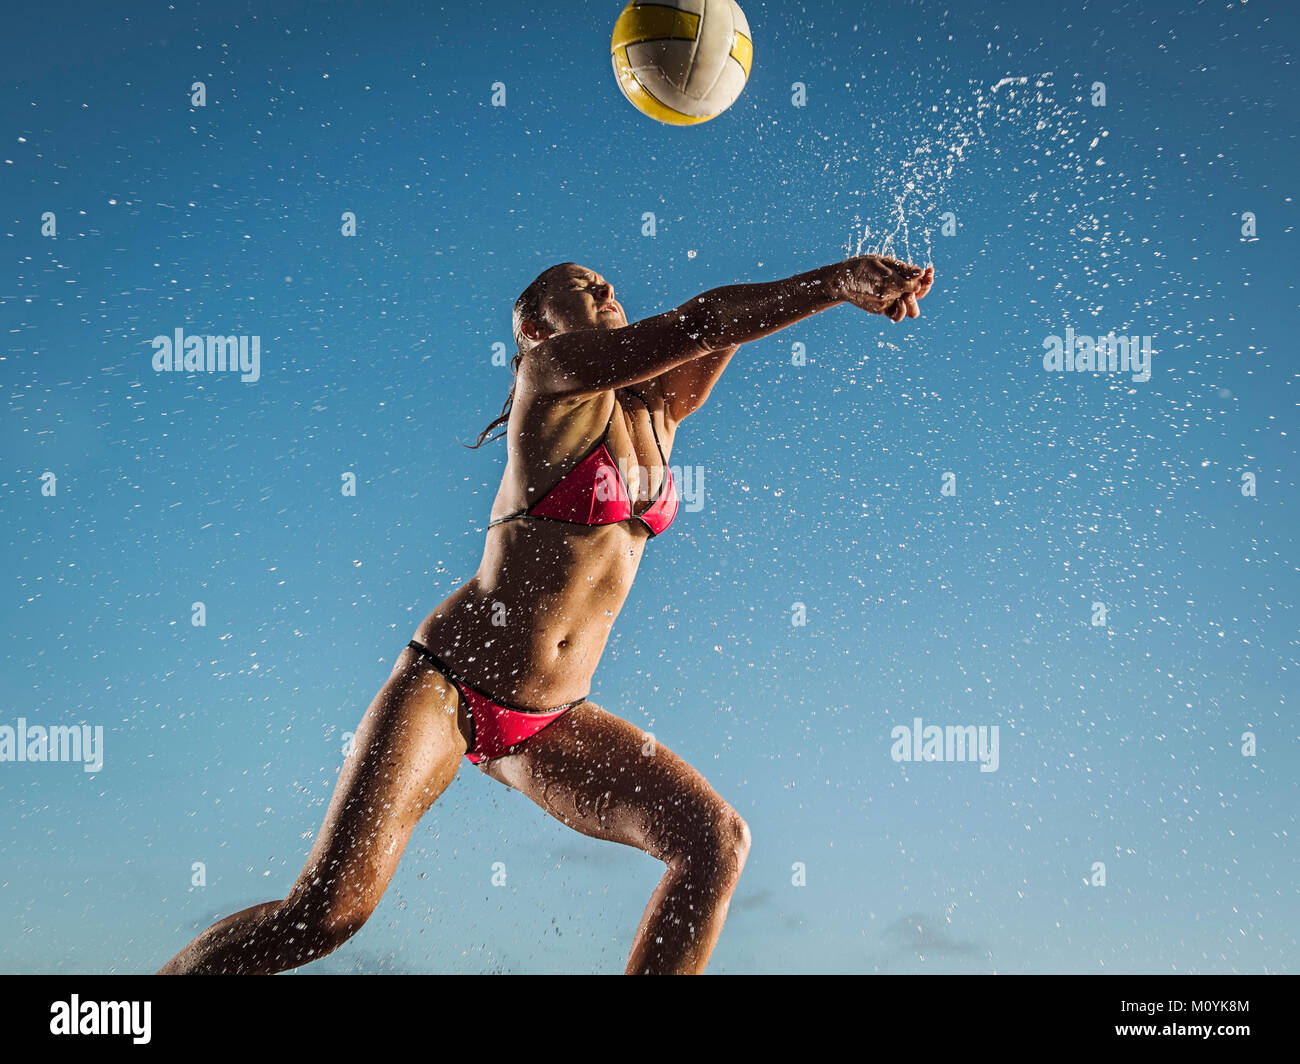 Les éclaboussures d'eau sur Caucasian woman playing volleyball Banque D'Images